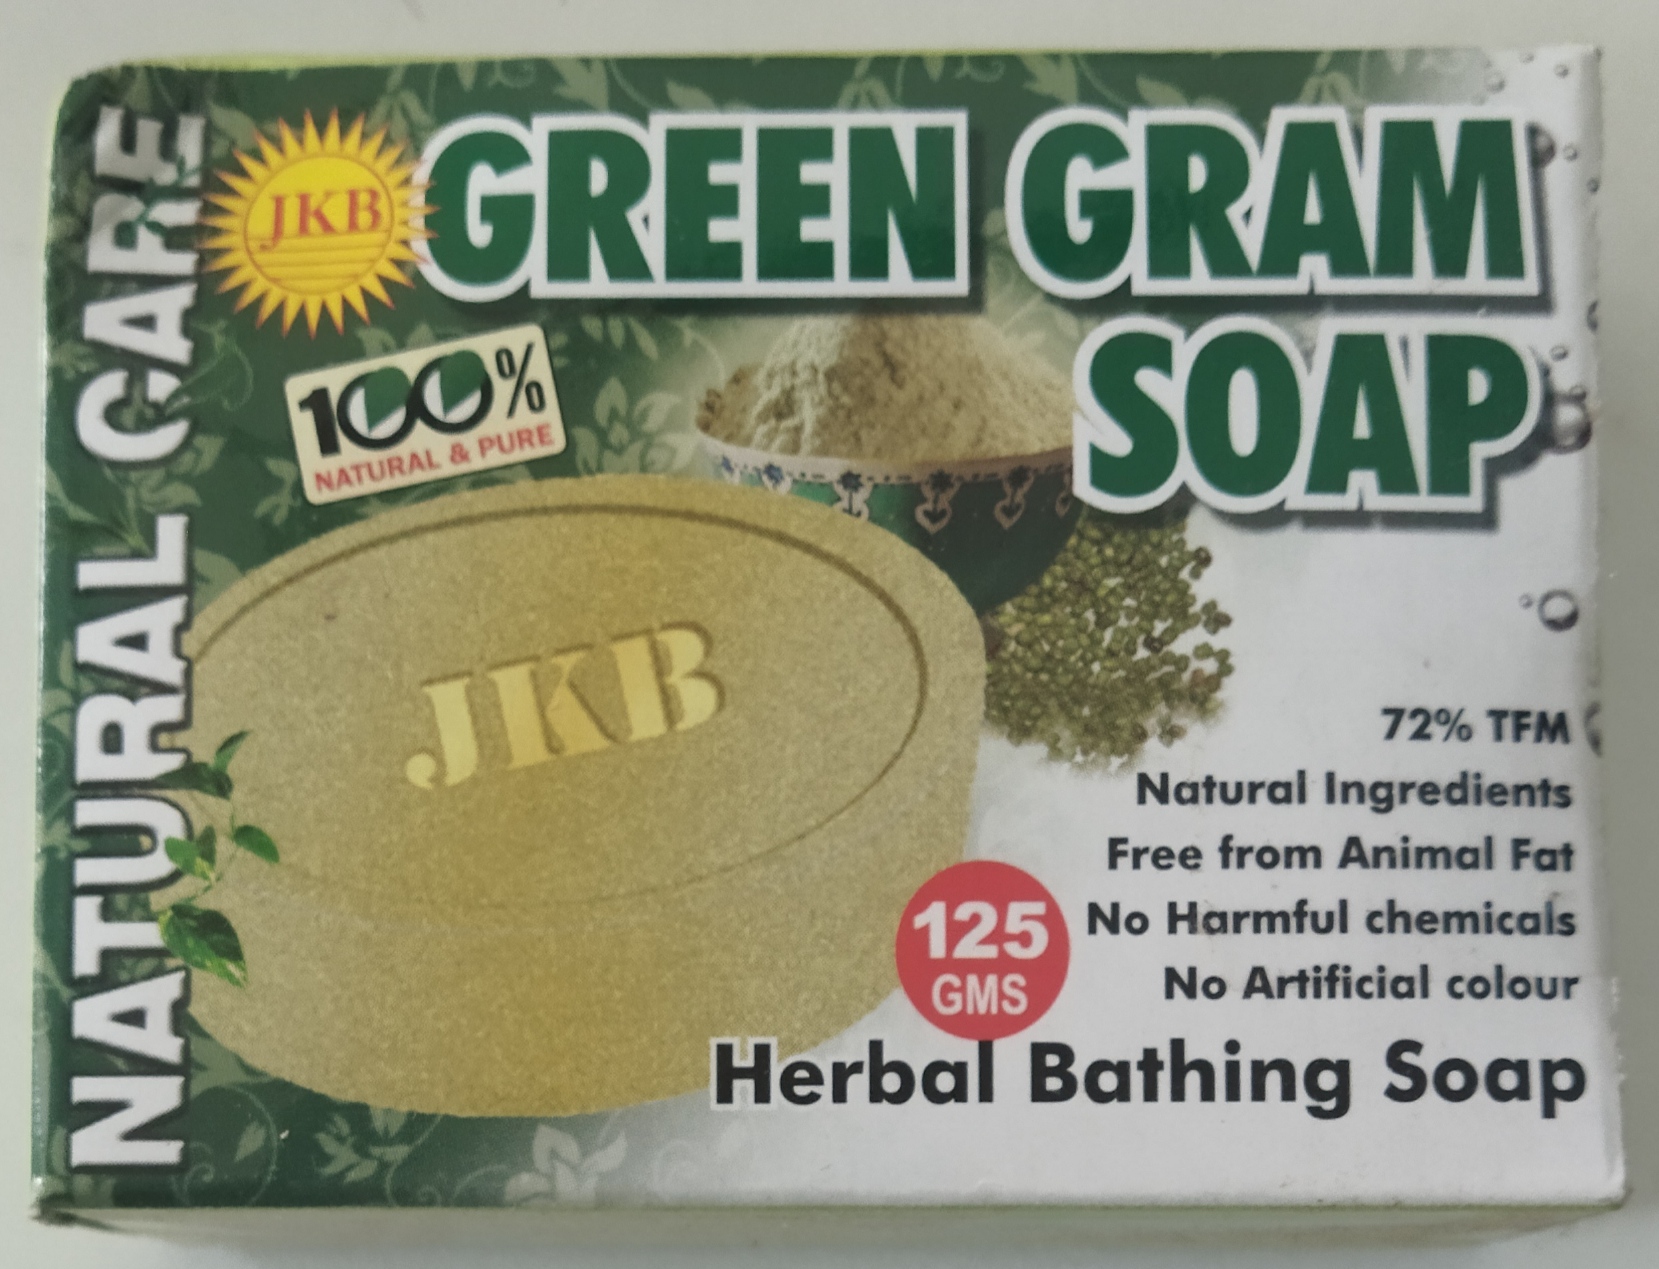 JKB green gram soap